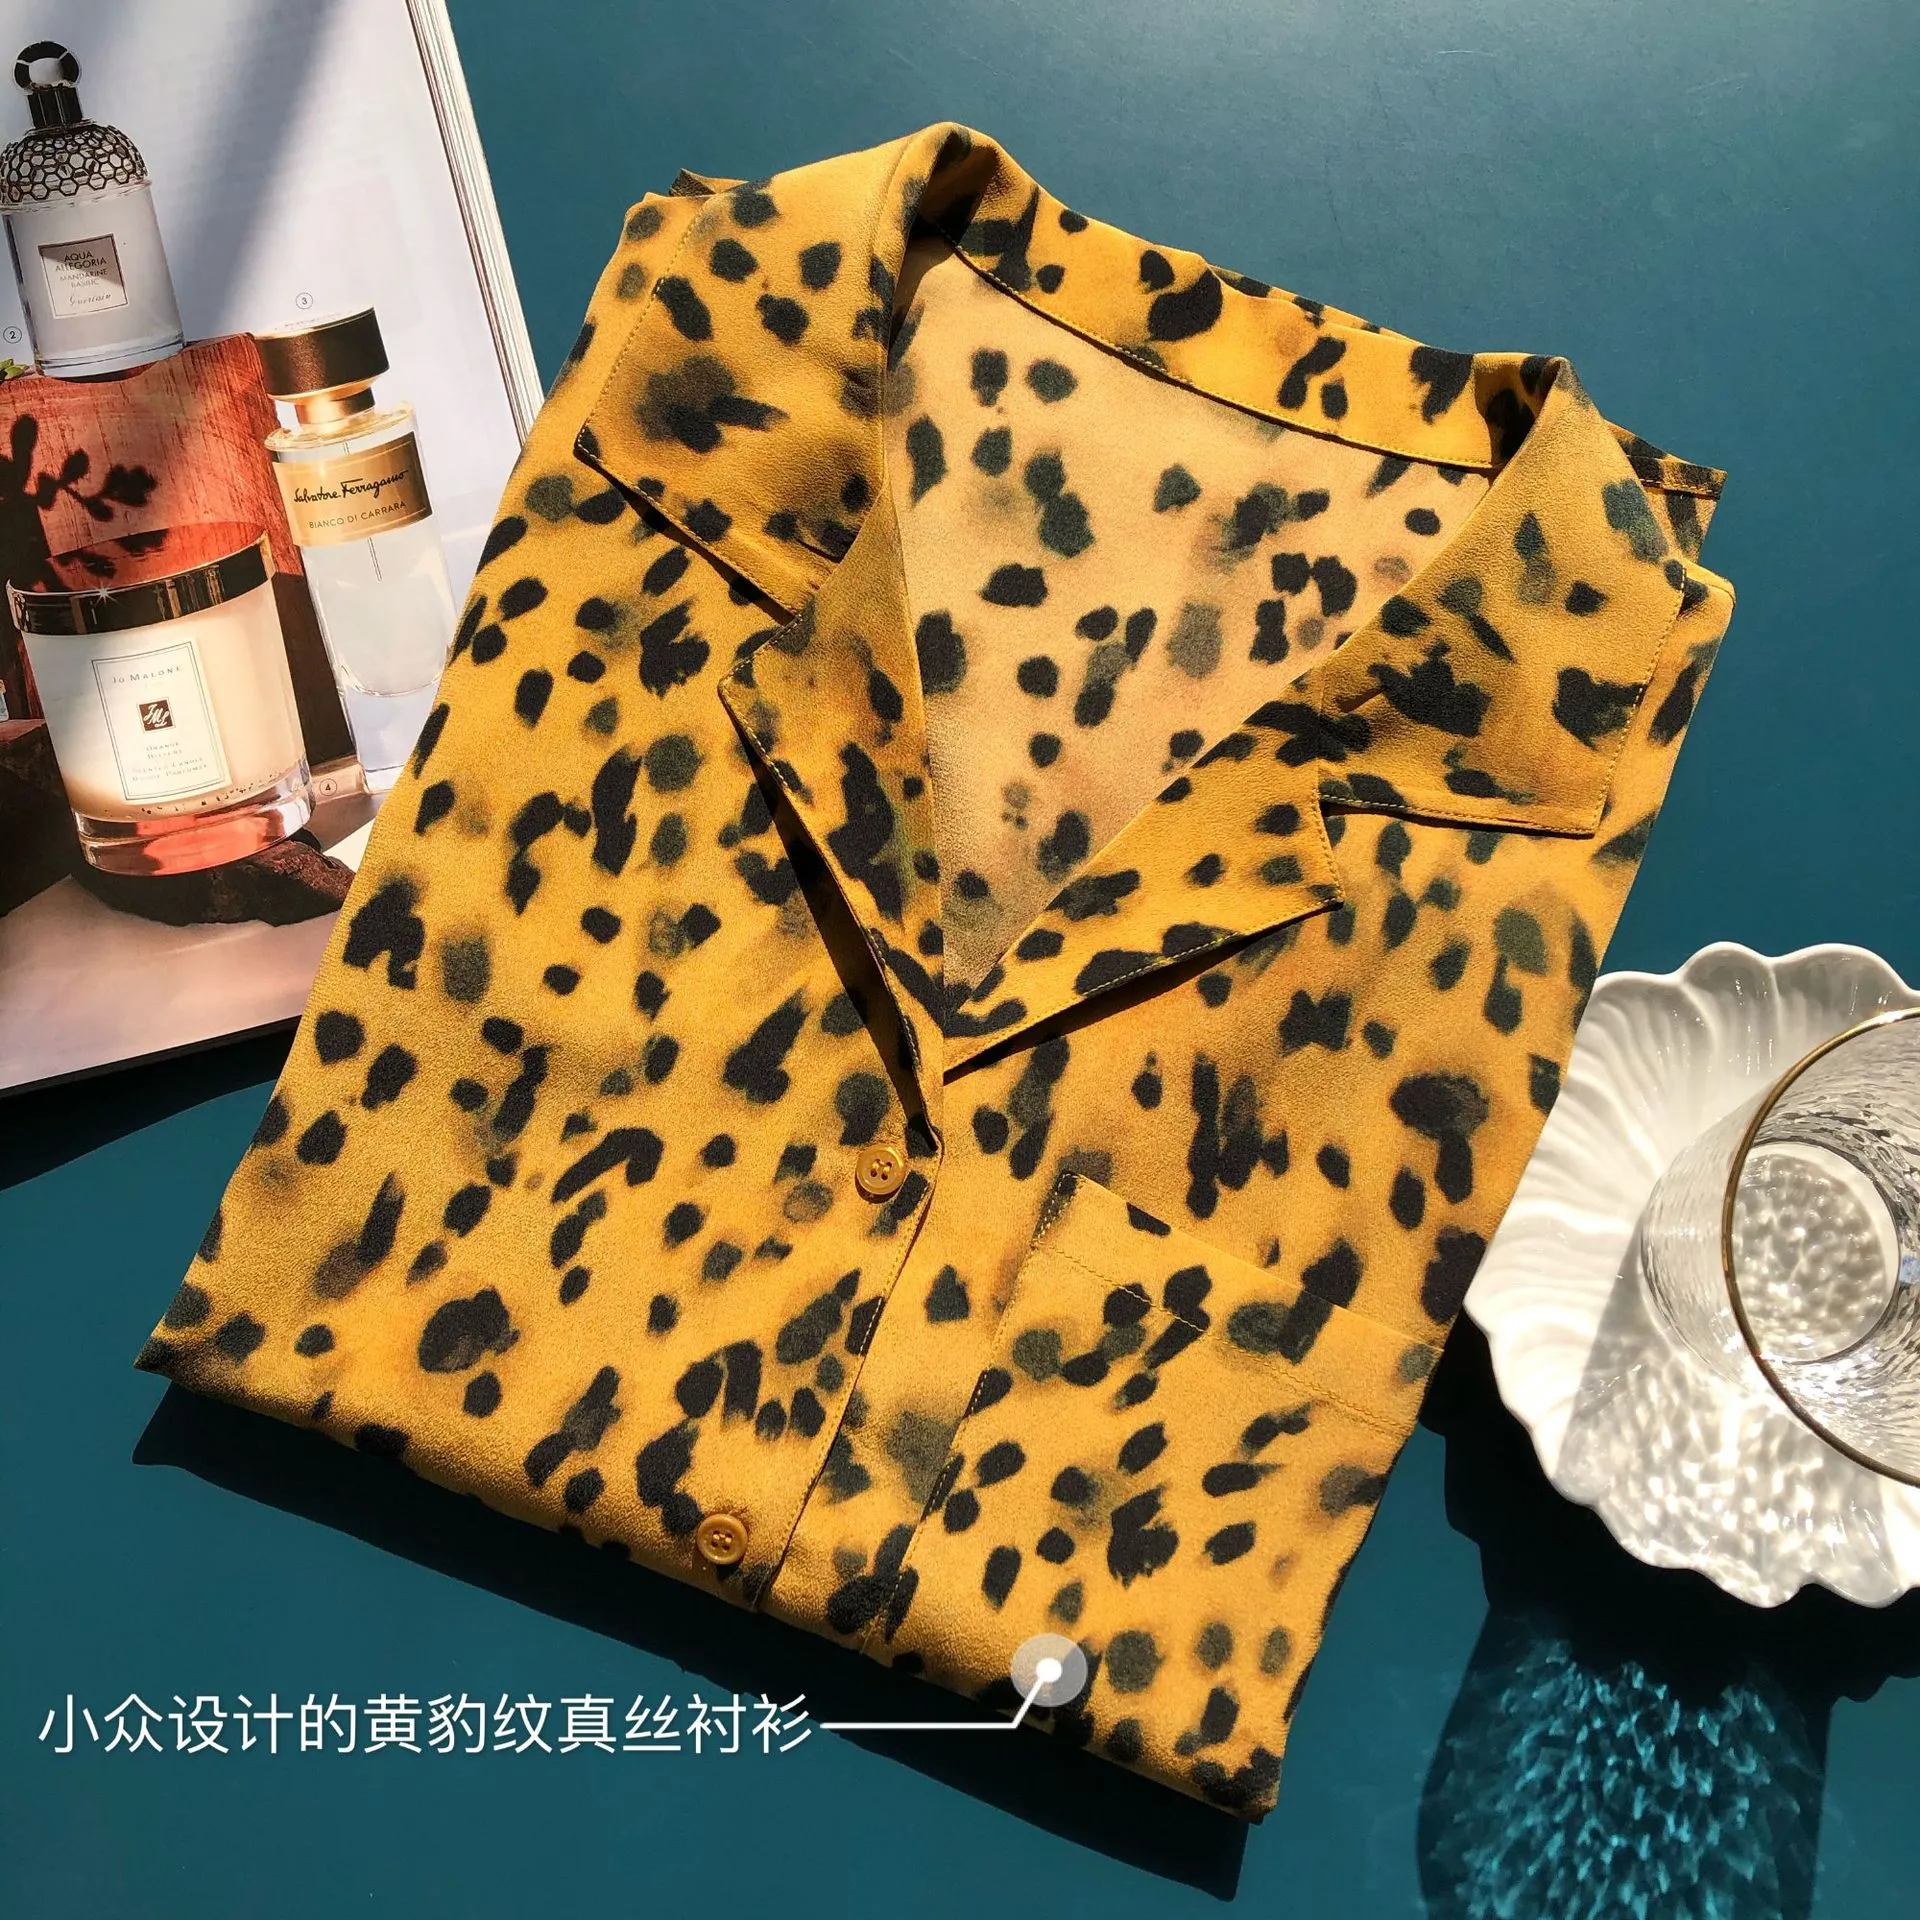 2022 estate autunno maniche lunghe risvolti dentellati camicetta gialla stile francese leopardato stampato 100% seta tasca monopetto camicia 22Q2114